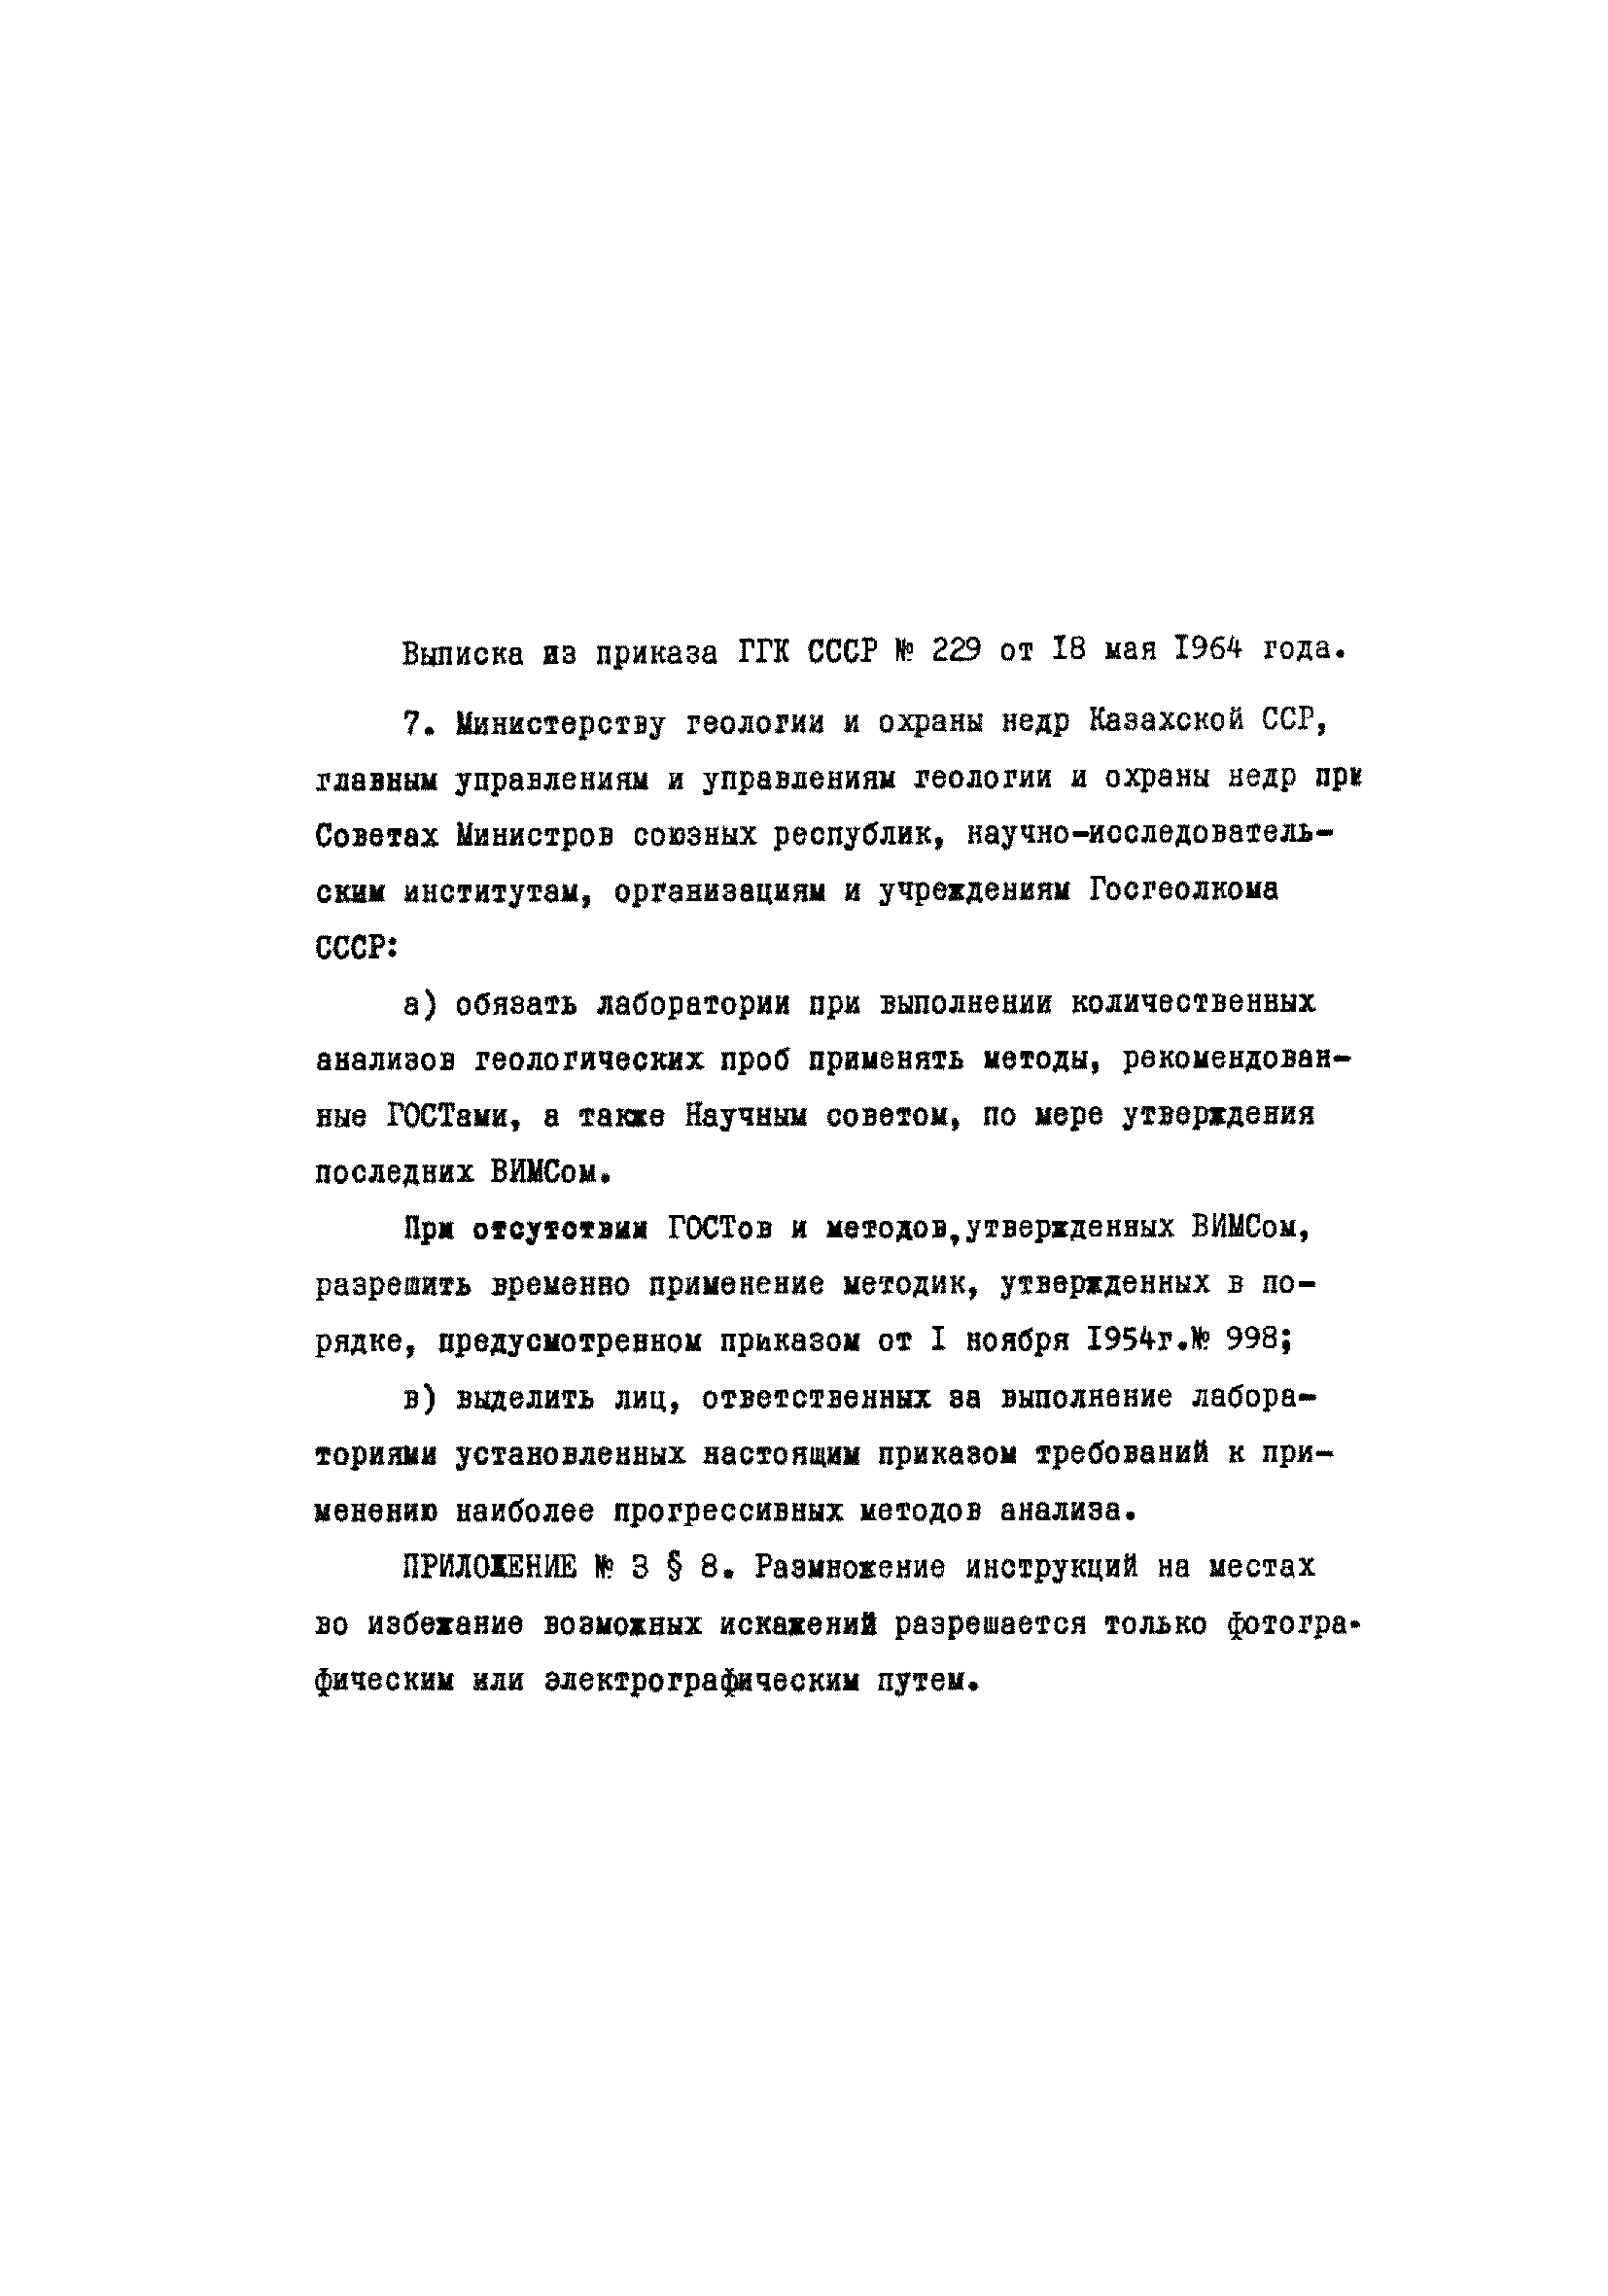 Инструкция НСАМ 134-ЯФ